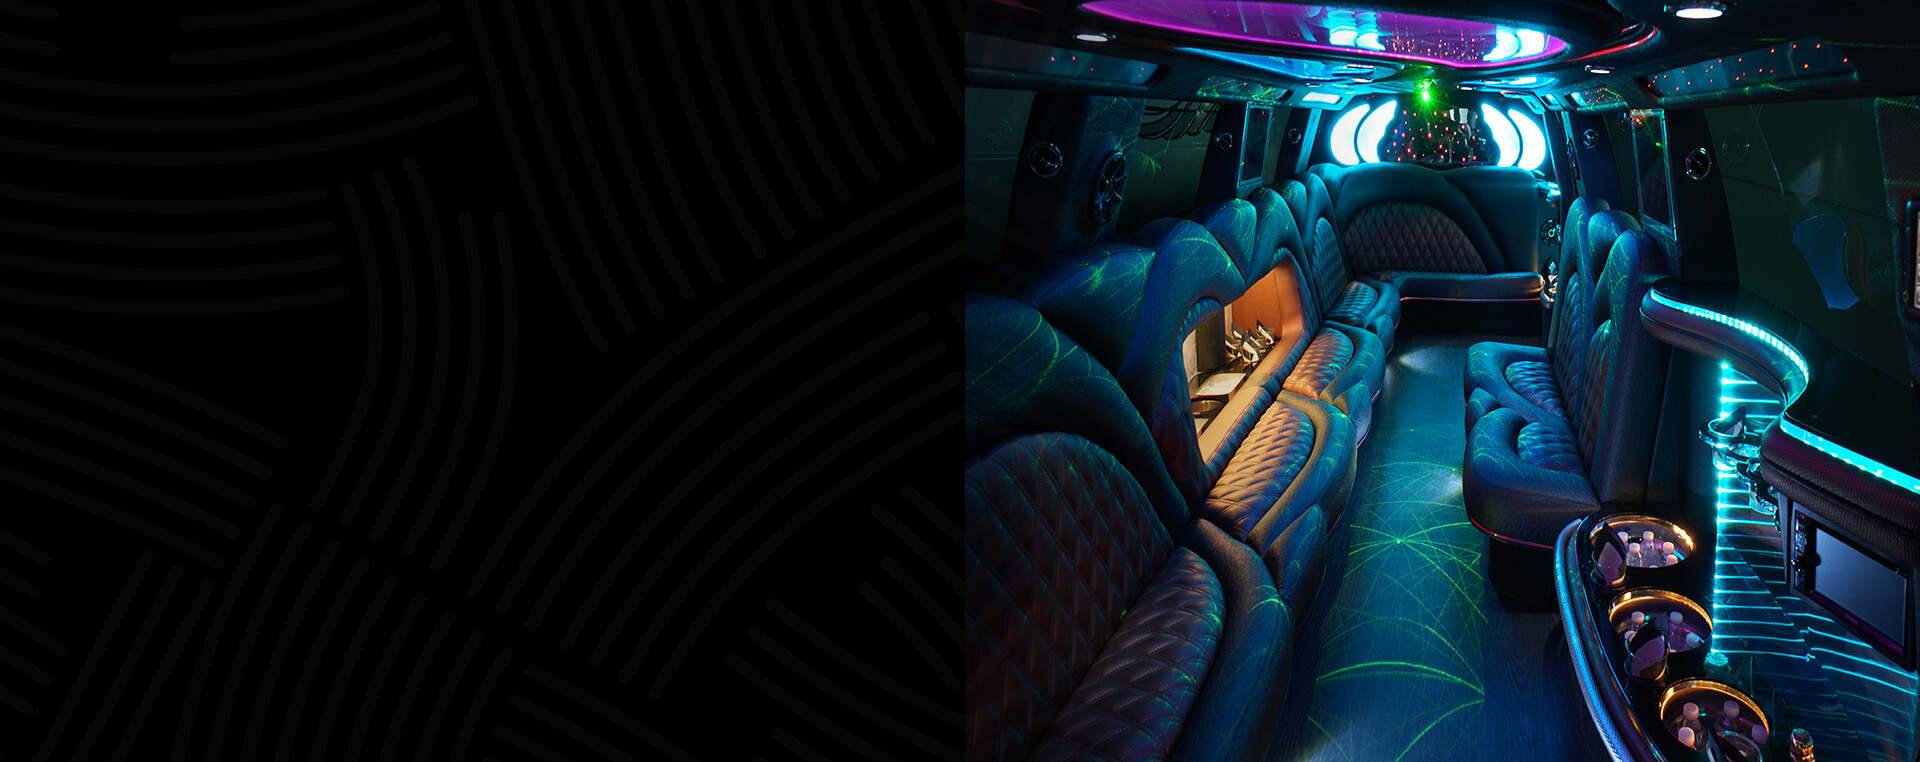 Premium limo interior